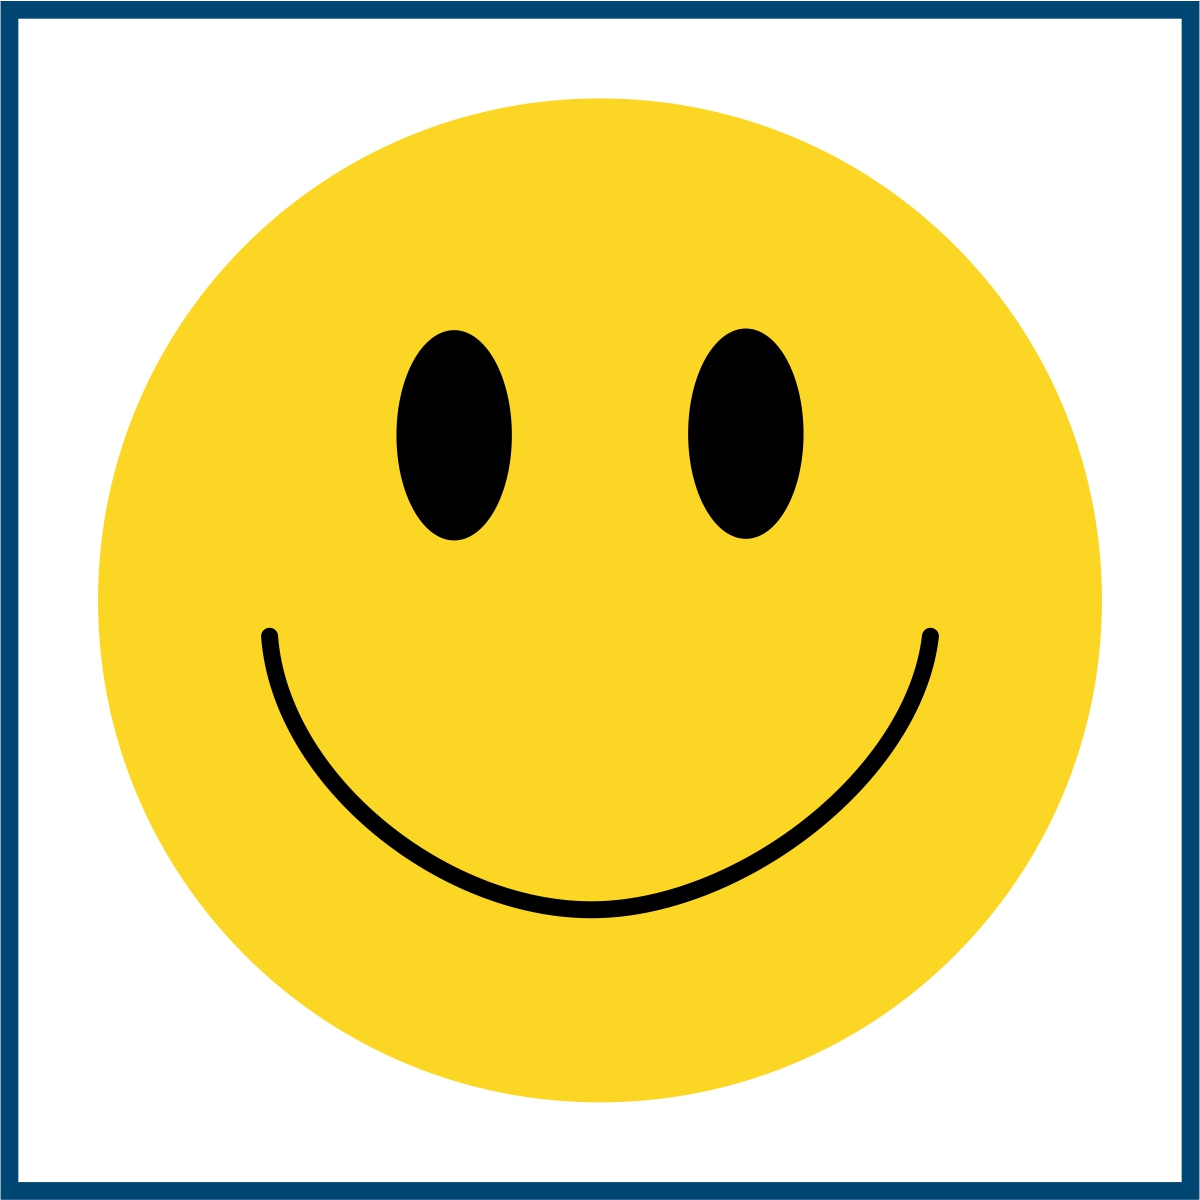 Piktogramm eines Smileys